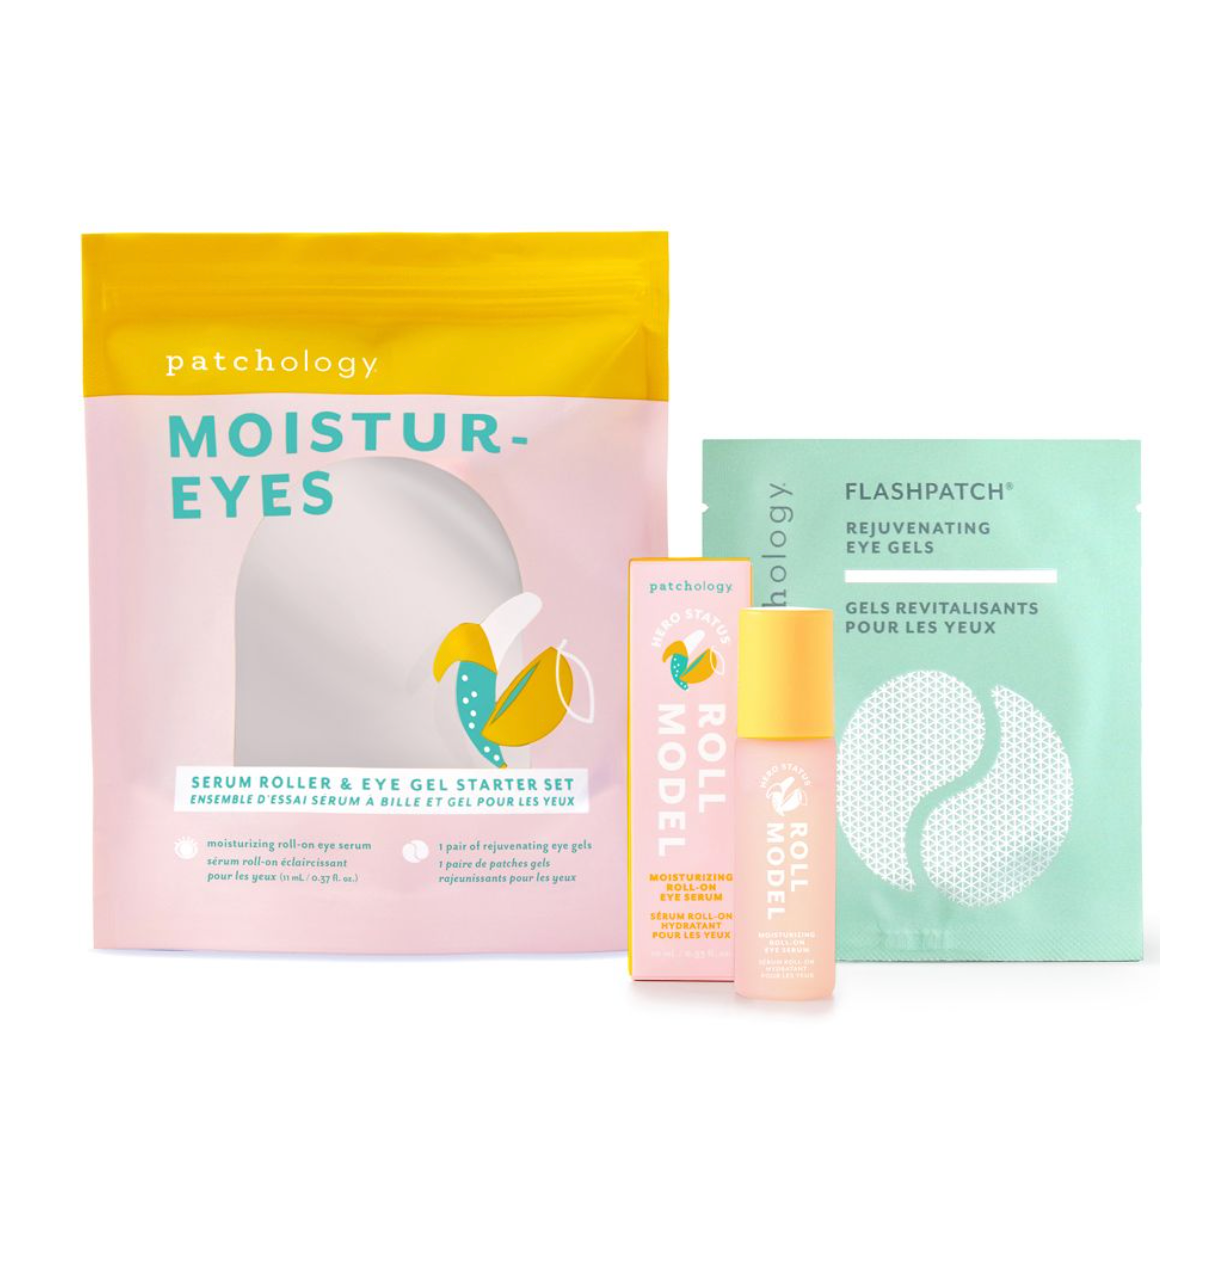 Moistur-Eyes Serum Roller & Eye Gel Starter Kit